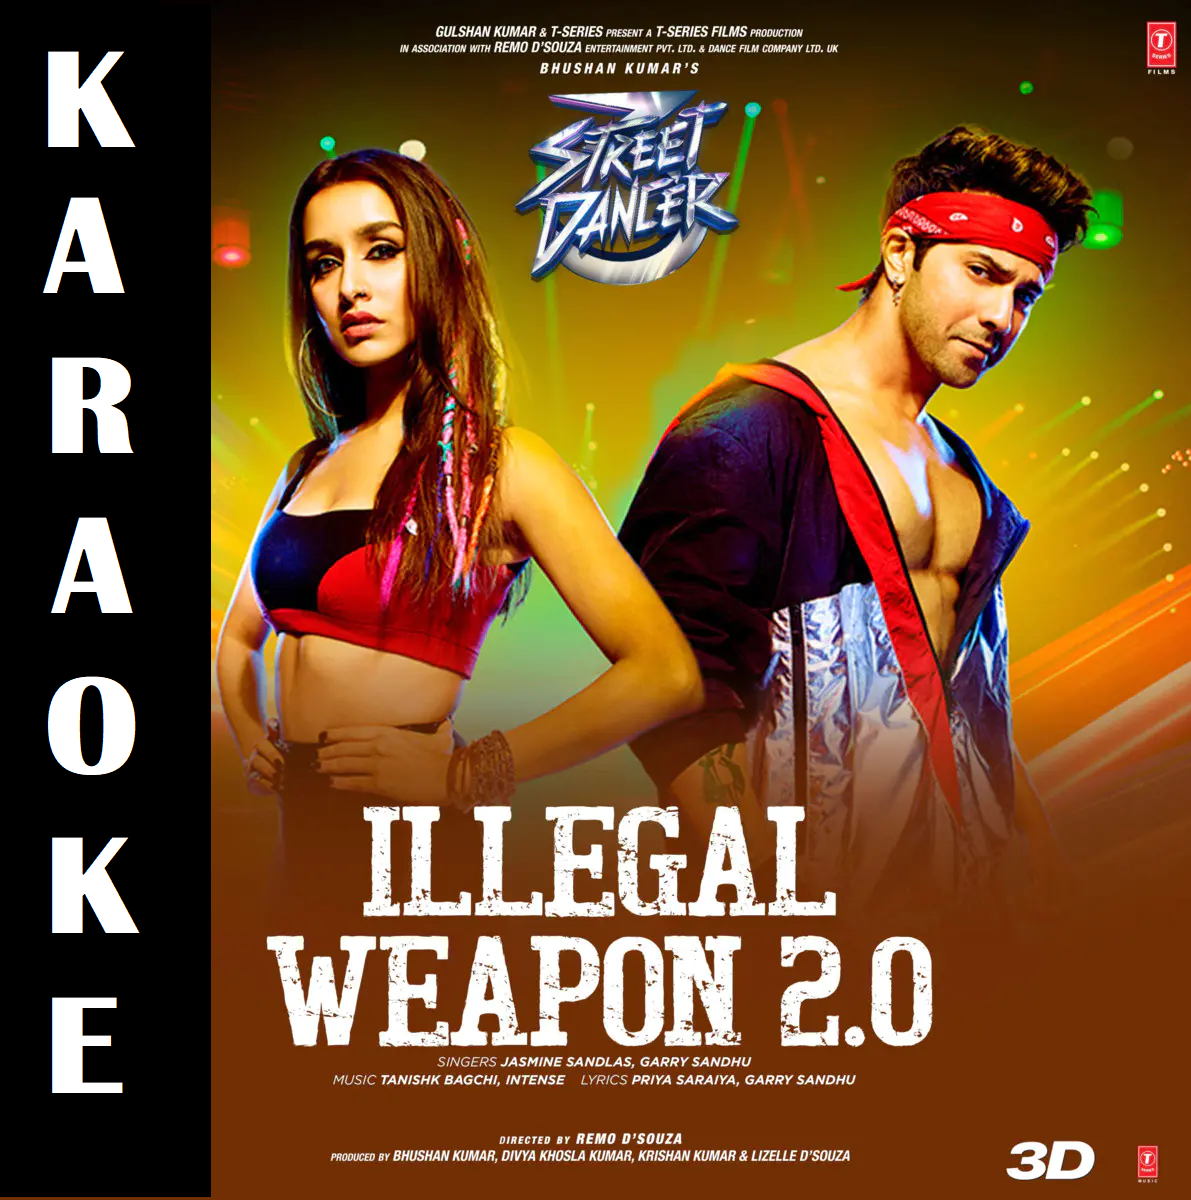 Illegal Weapon 2 0 Full Karaoke Hq 320 Kbps Street Dancer